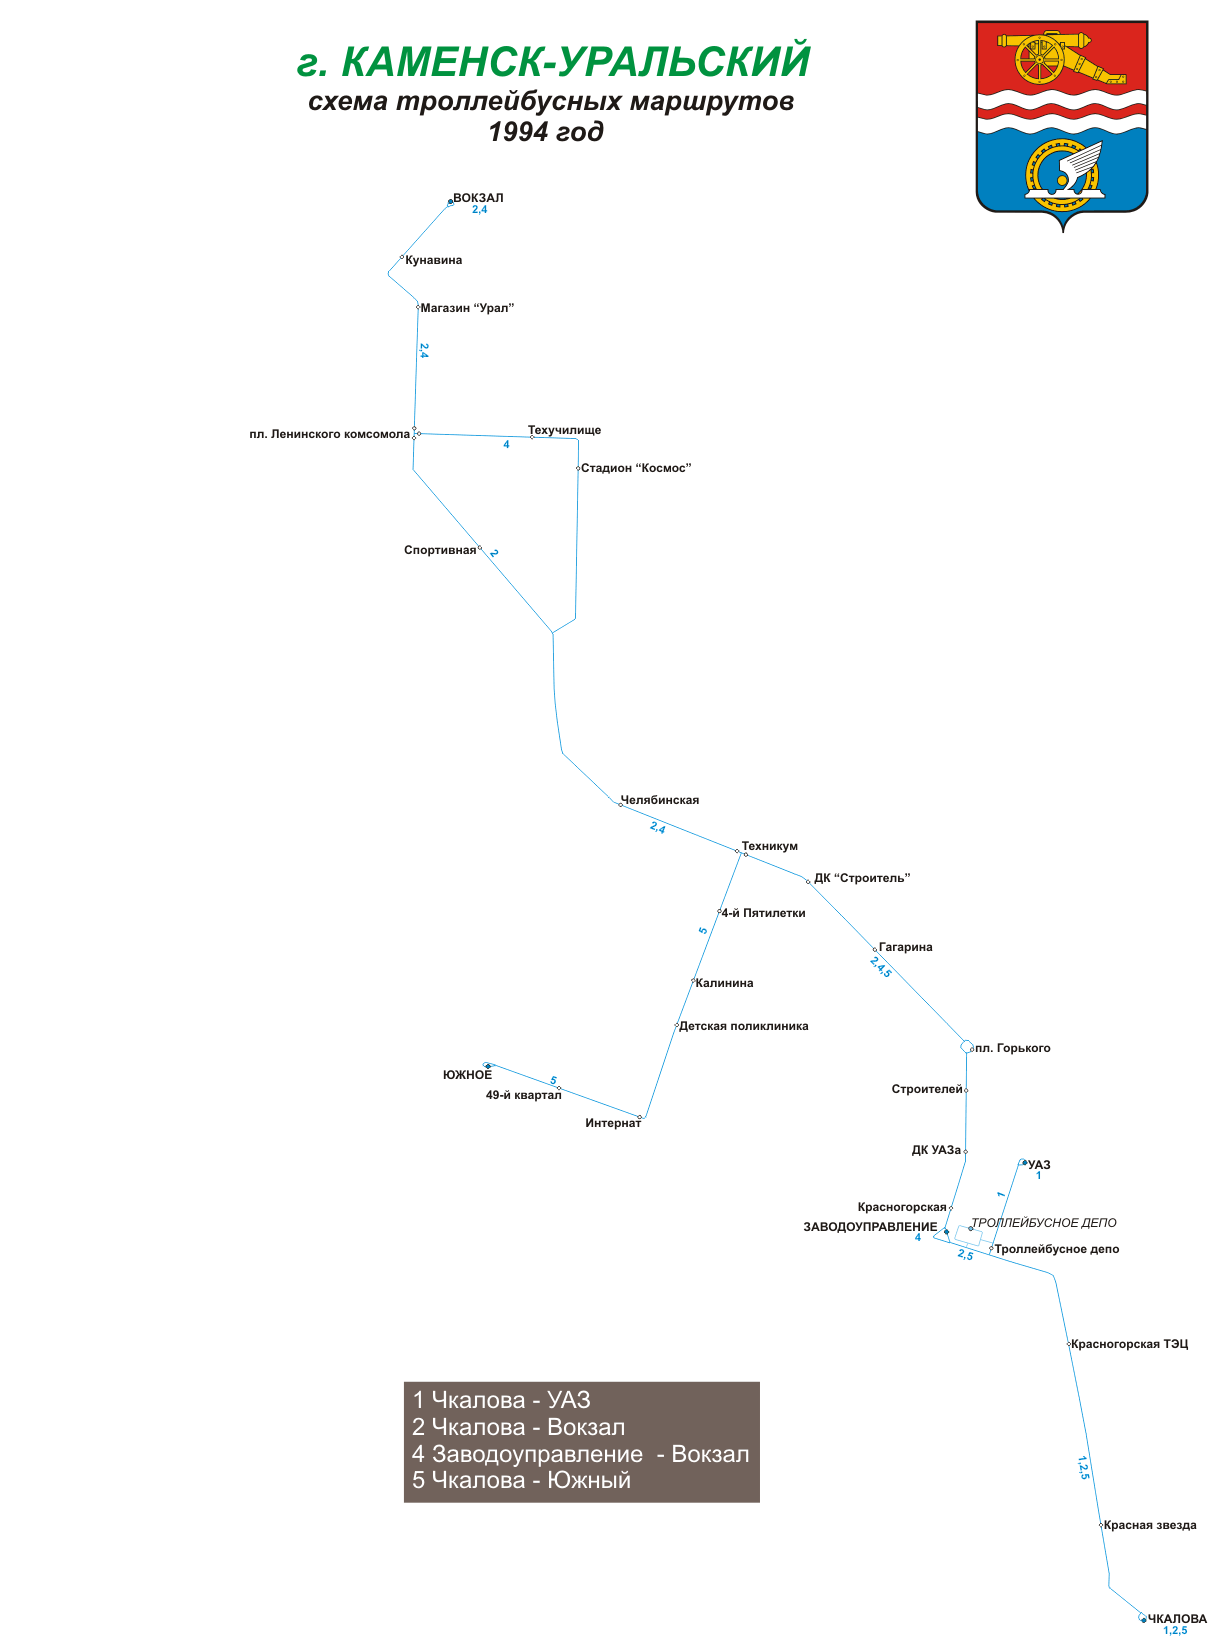 Kamenska-Urālu — Maps